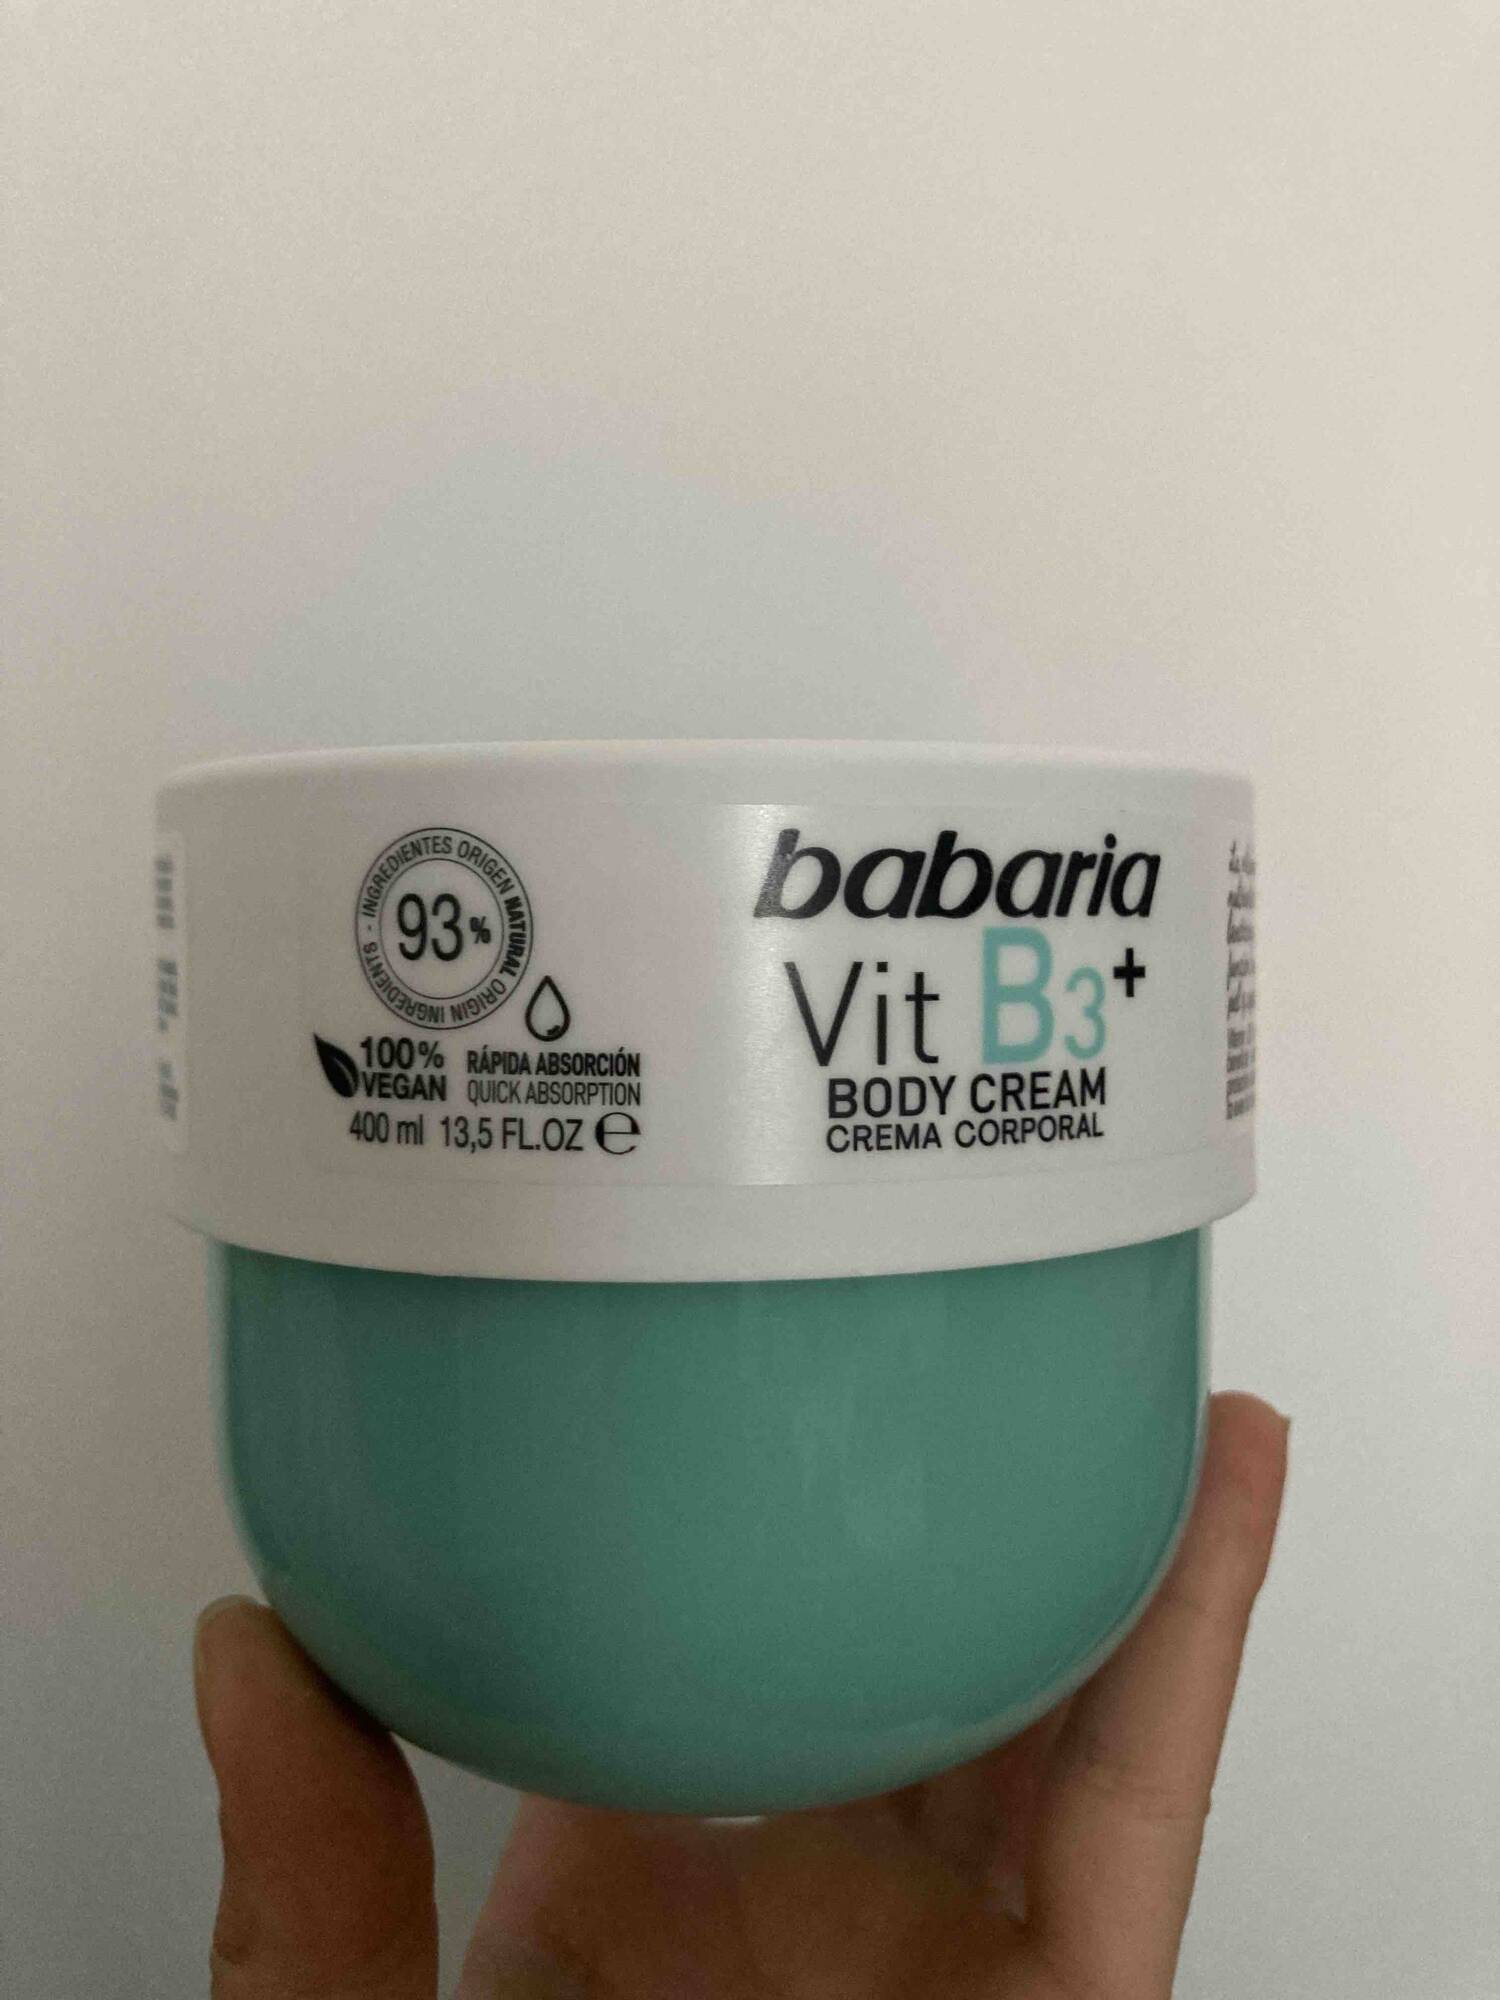 BABARIA - Vit B3+ - Body cream